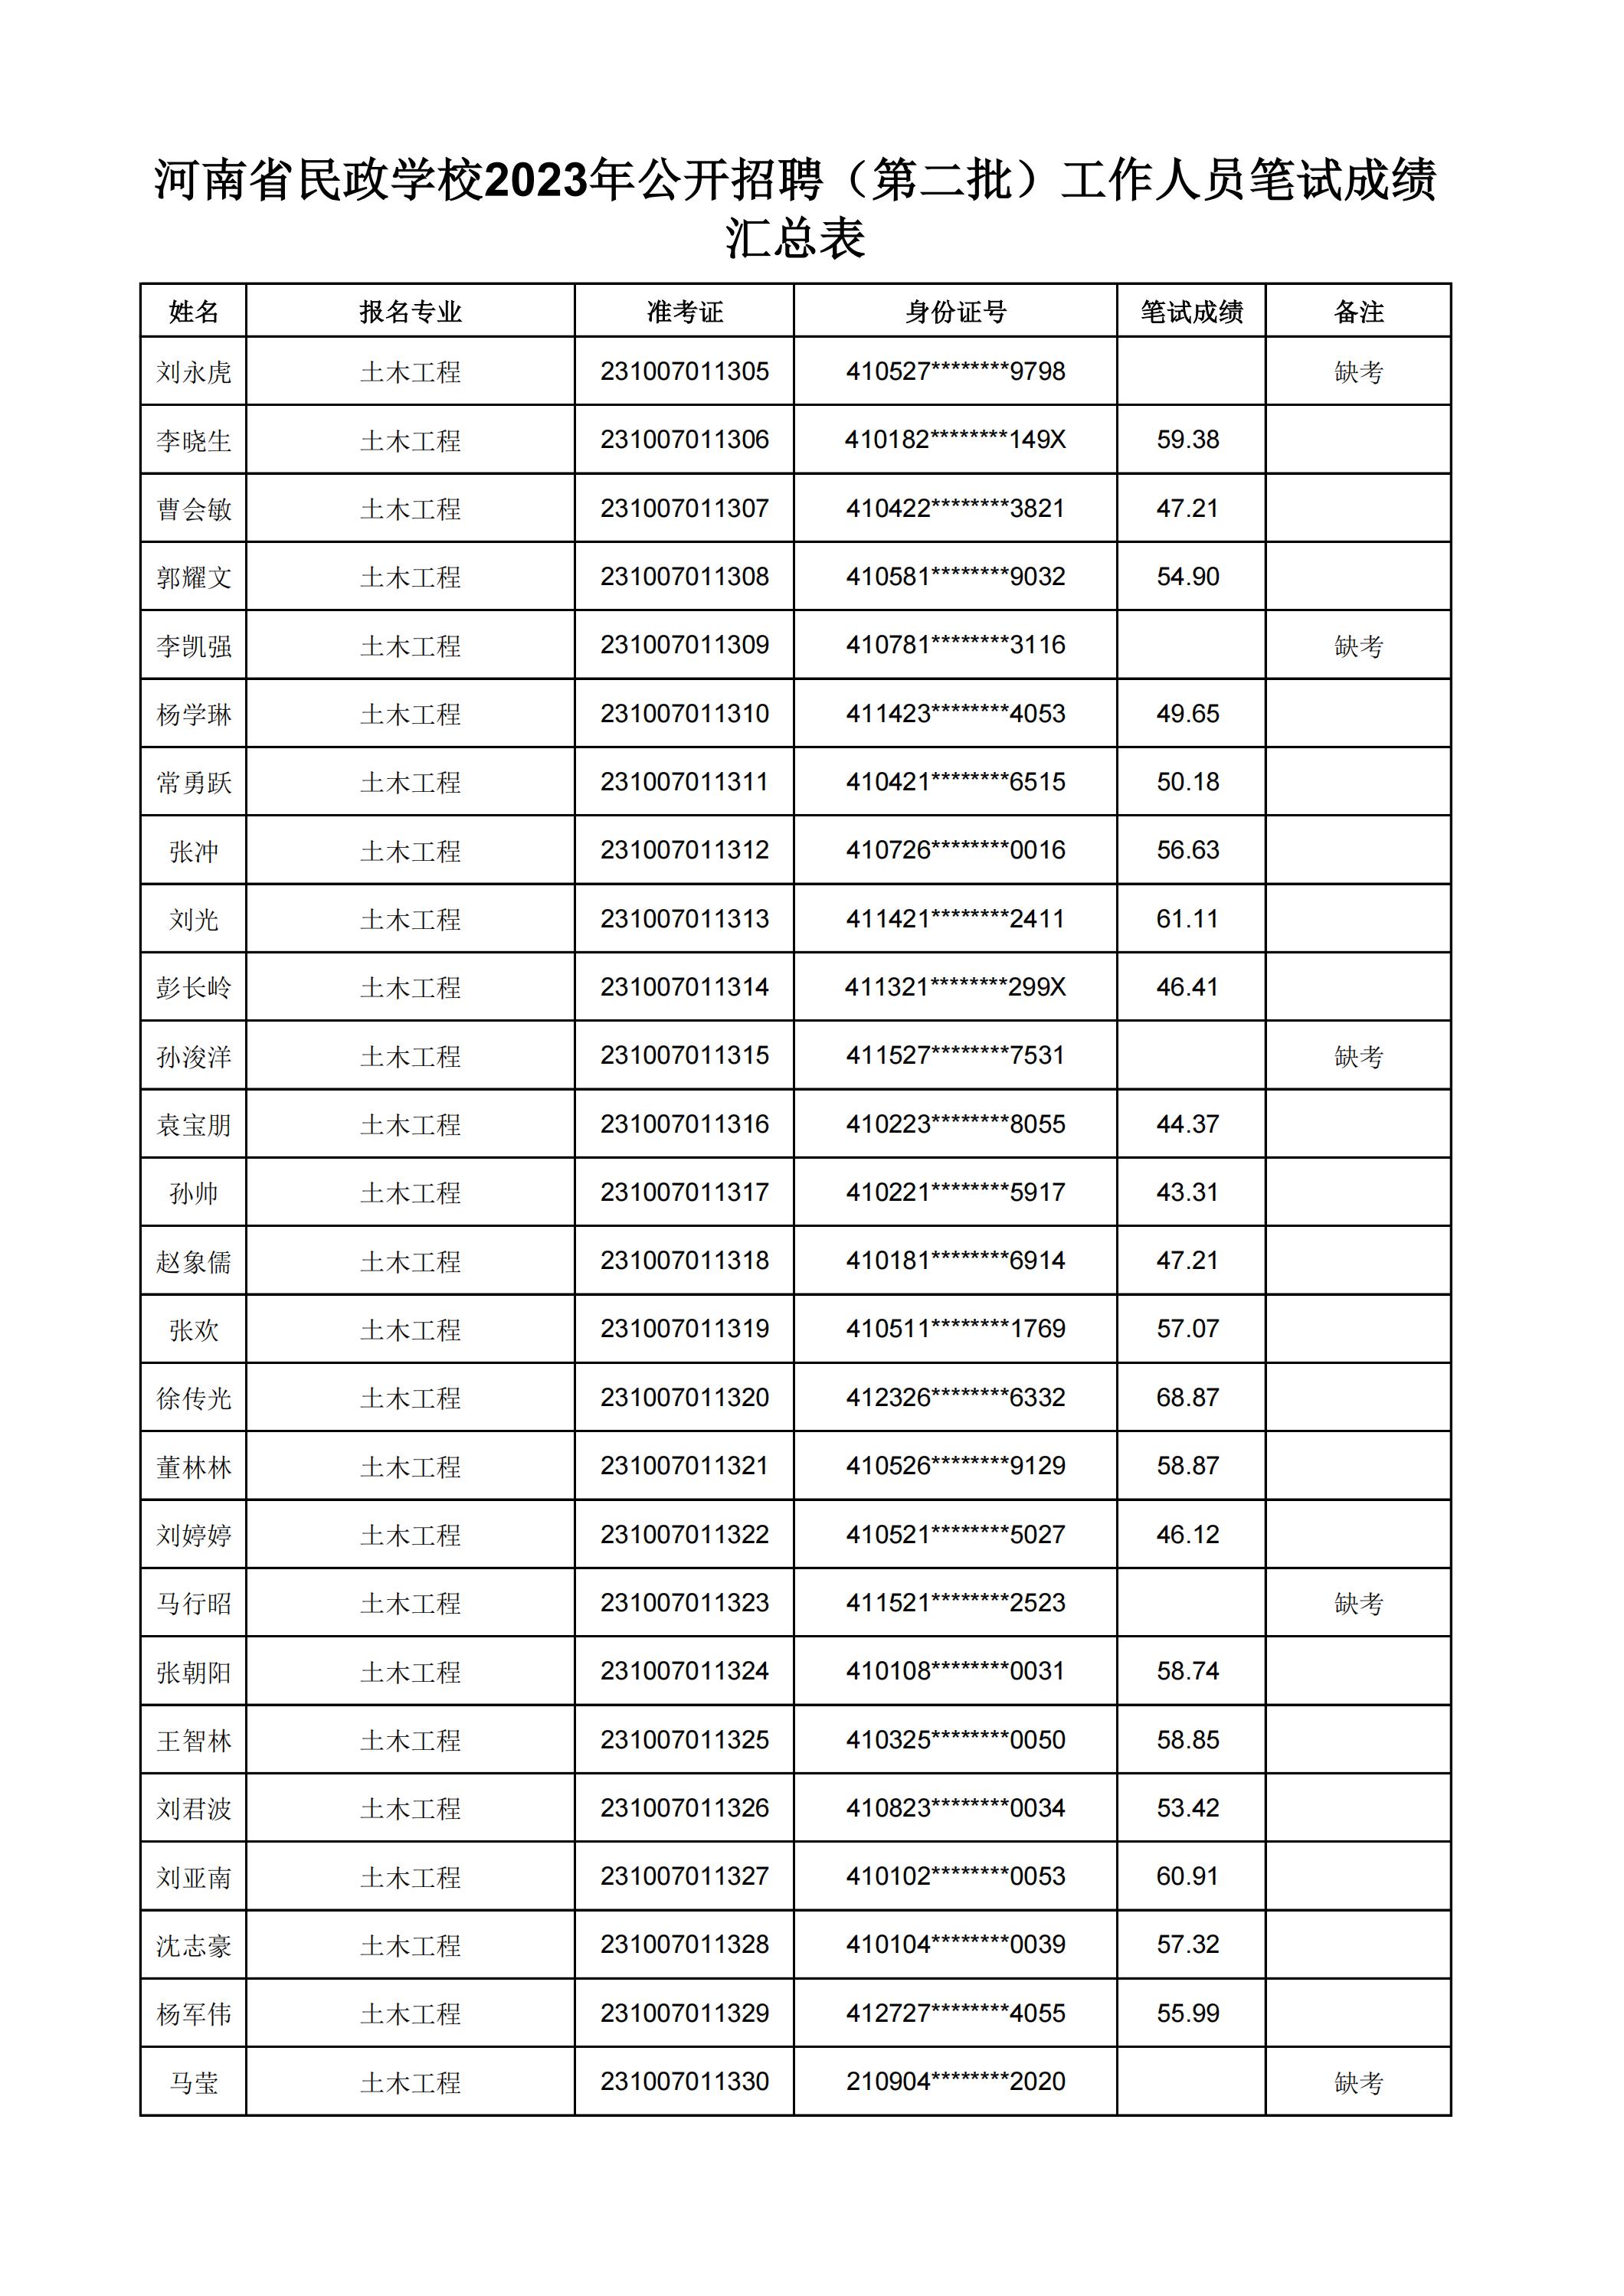 河南省民政学校2023年公开招聘（第二批）工作人员笔试成绩汇总表(2)_14.jpg